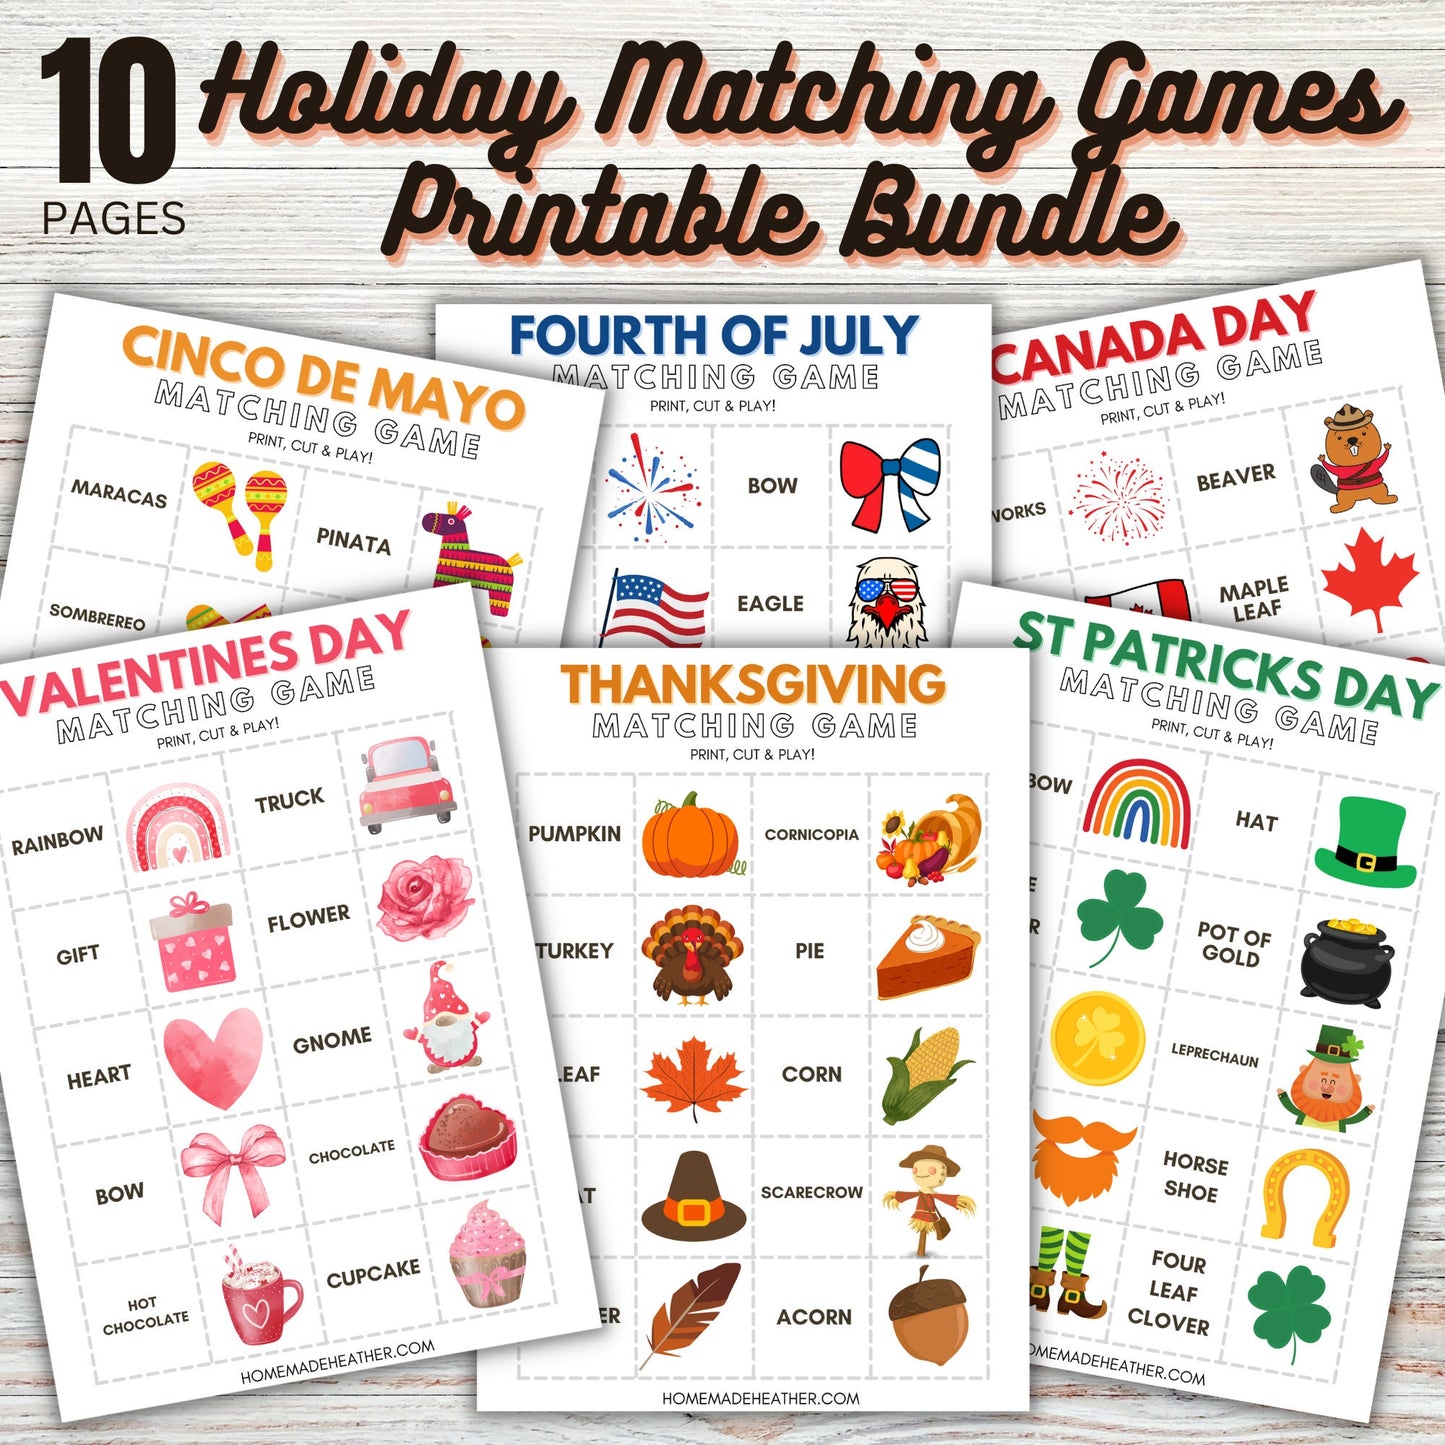 Holiday Matching Game Printable Bundle - Matching Game Holiday Printable PDF - Instant Download